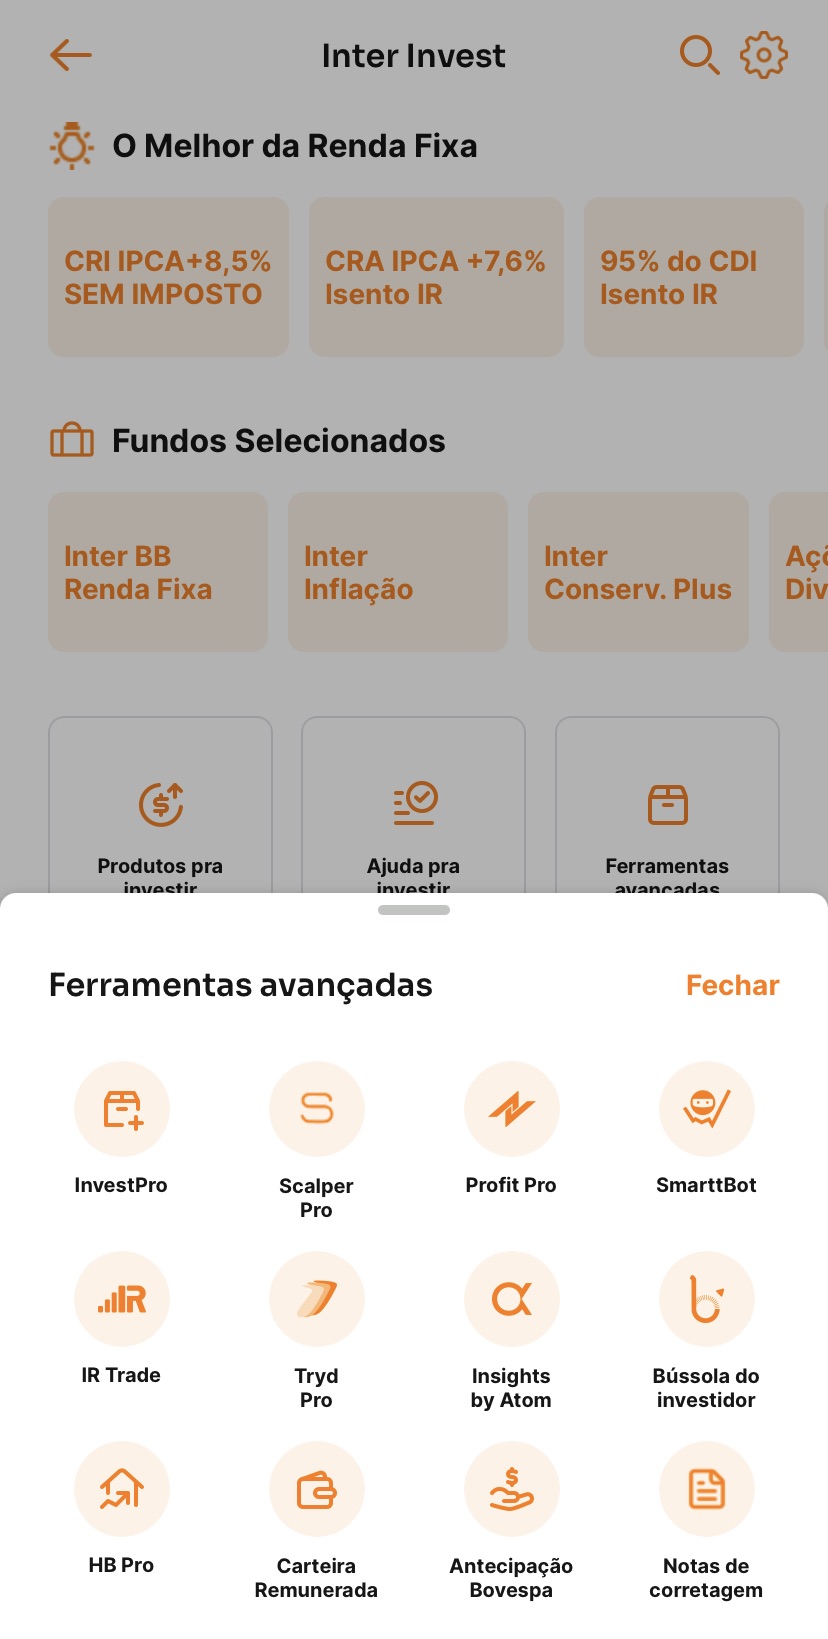 Super App da Inter Invest com as ferramentas avançadas para traders